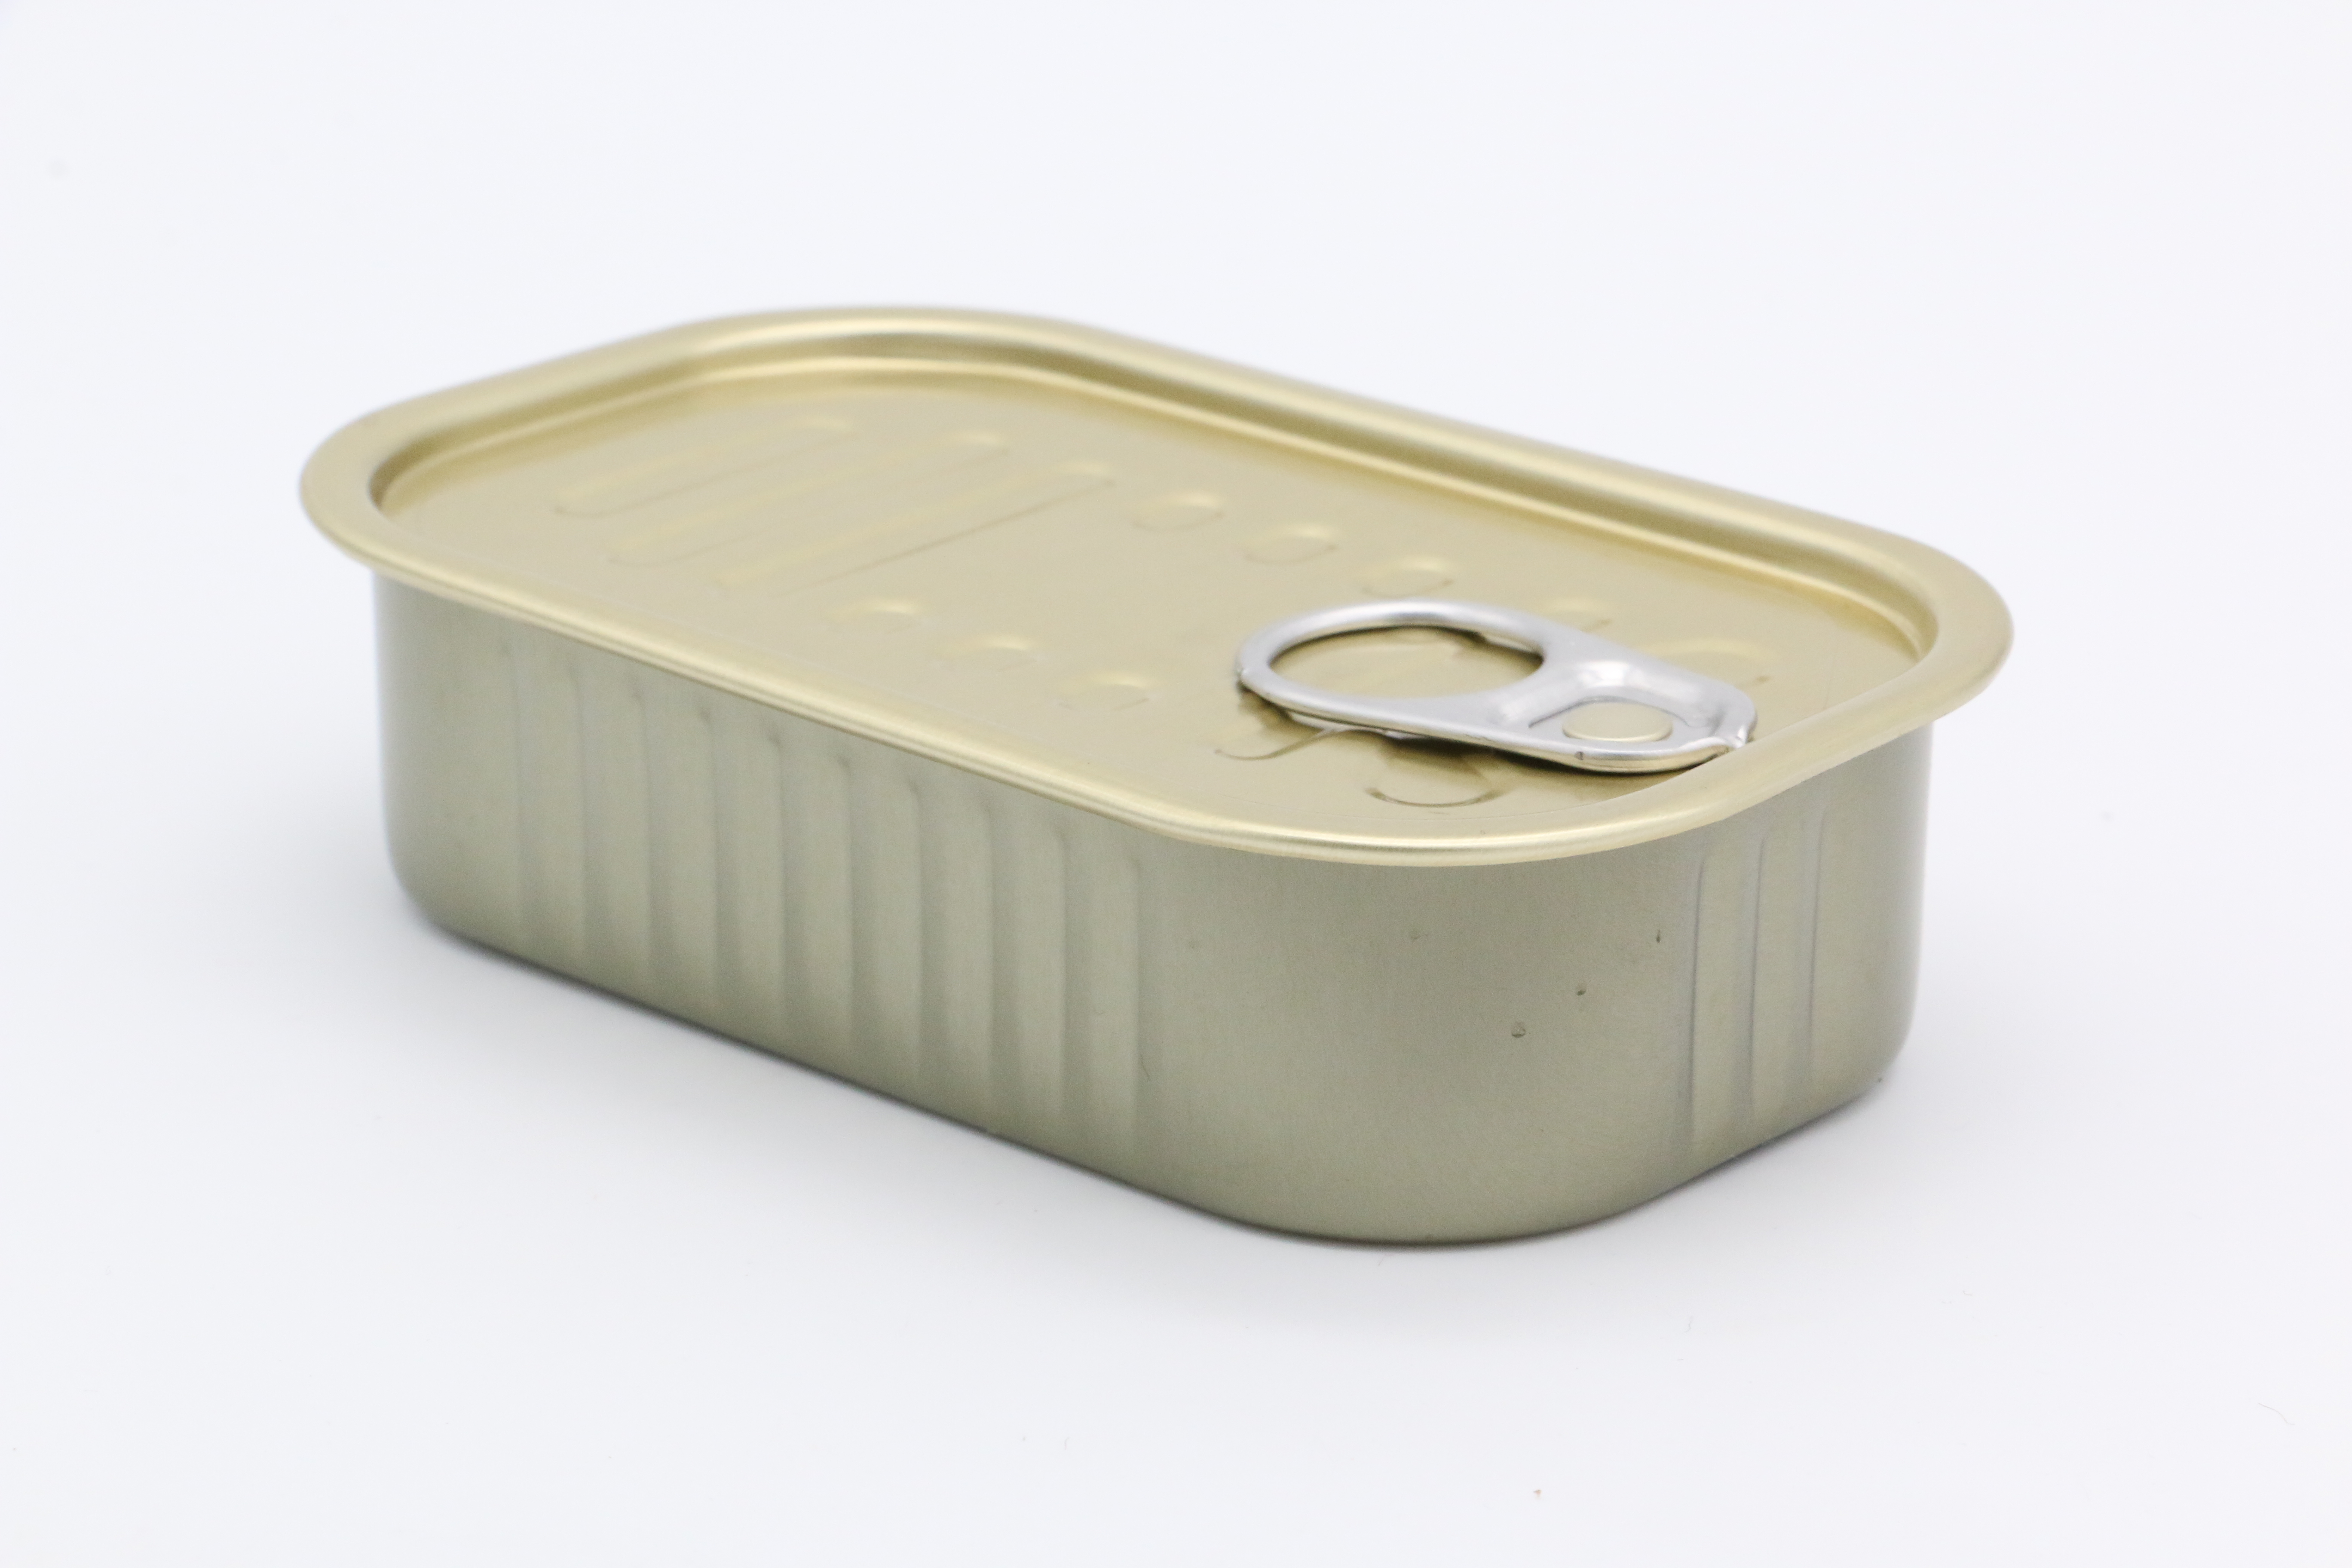 鐵罐是一種(zhǒng)常見的金屬包裝容器,具有以下特點: